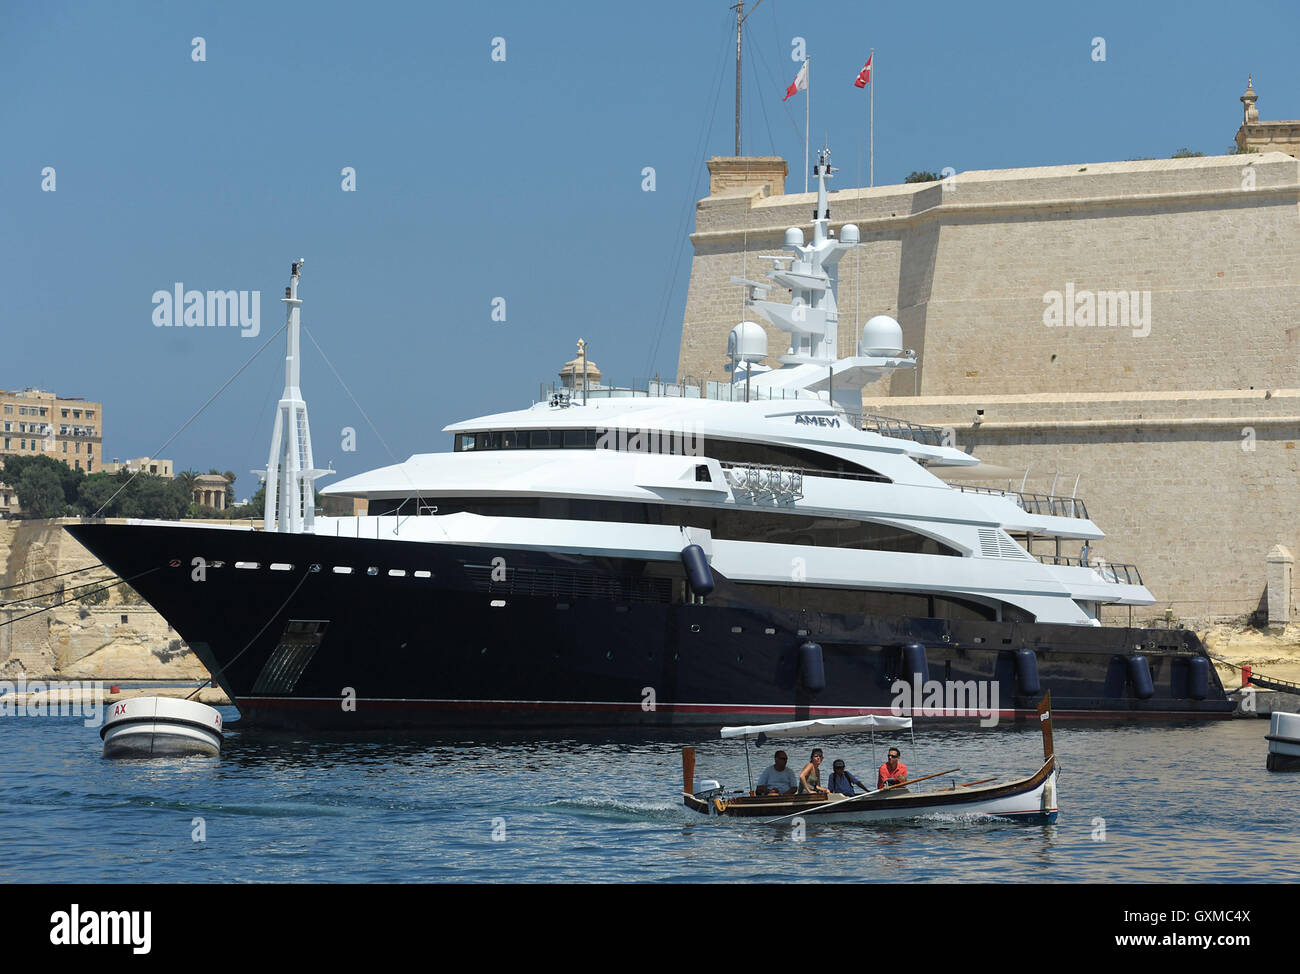 Un luzzu traditionnel passe un luxe superyacht à Grand Harbour Marina, Vittoriosa, La Valette, Malte Banque D'Images